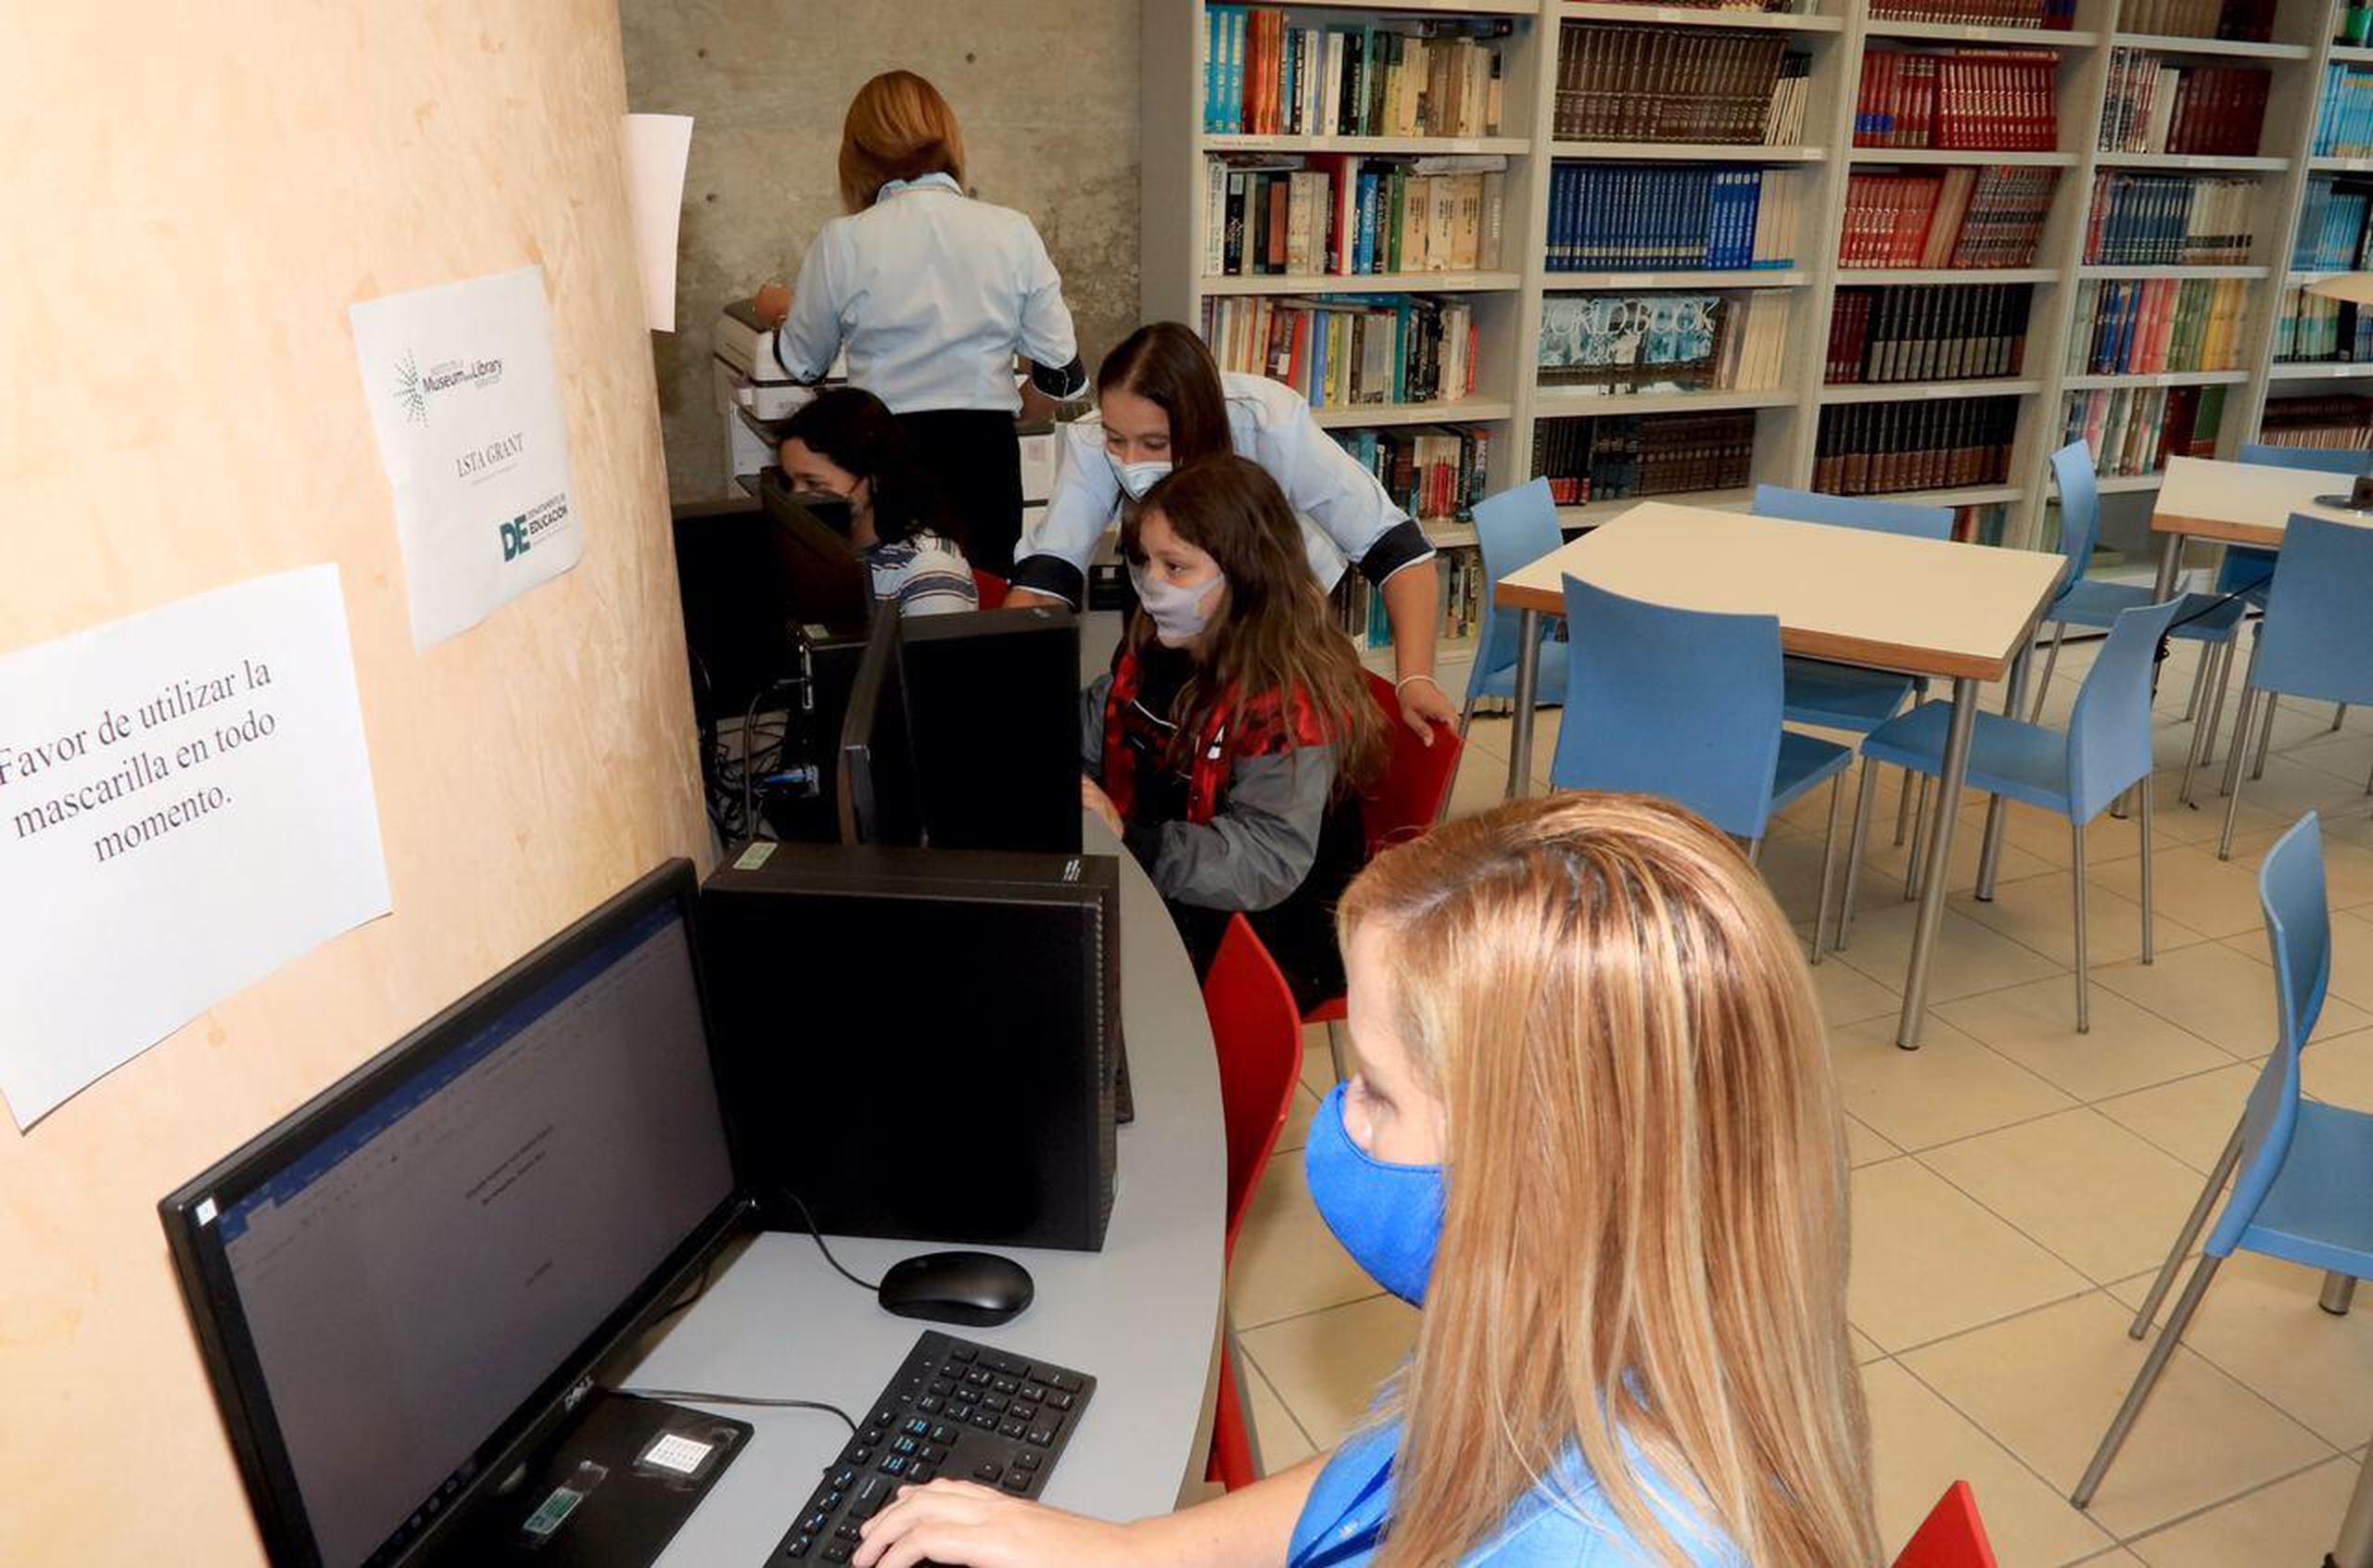 También se habilitaron espacios en la biblioteca municipal para que los estudiantes tuvieran acceso a las computadoras y pudieran hacer tareas escolares.